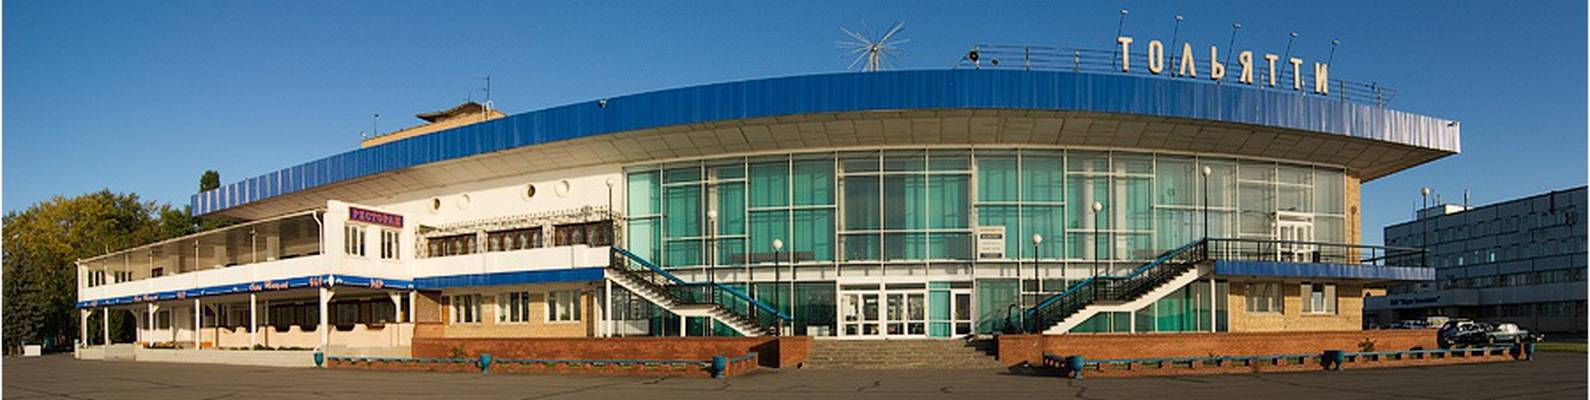 Есть ли аэропорт в Тольятти и какие расположены в ближайших городах